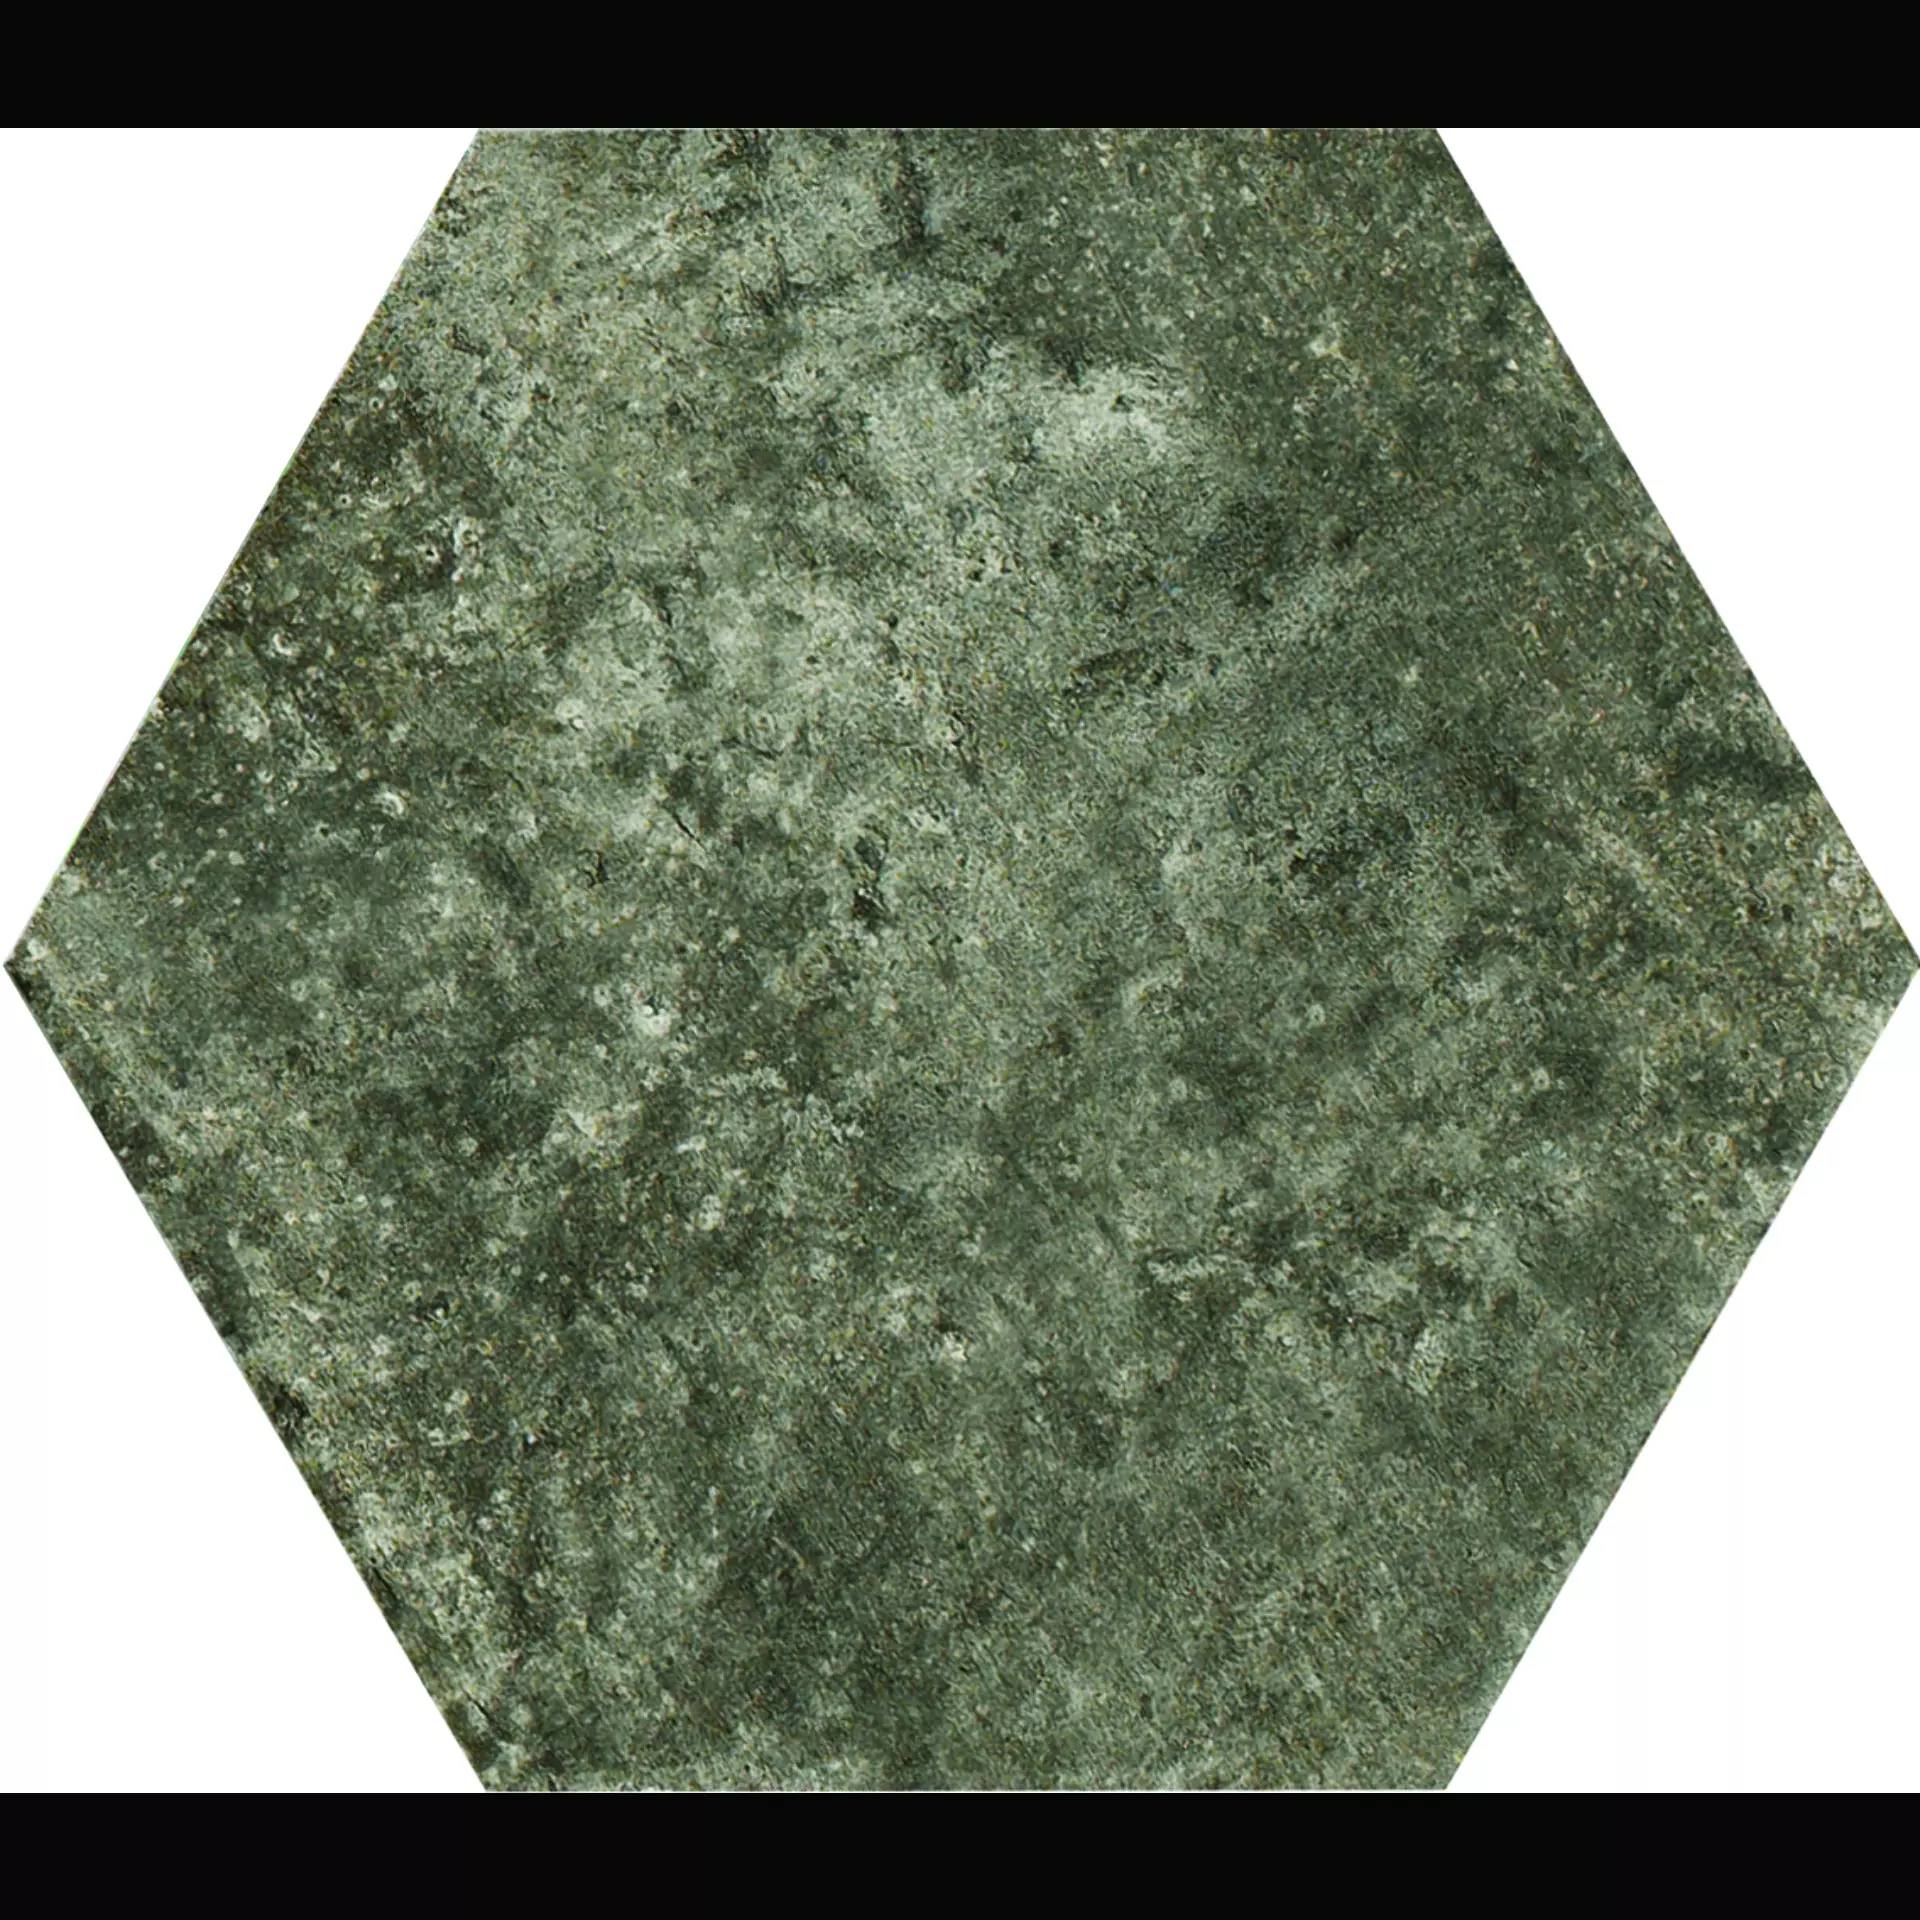 CIR New York Wall Street Naturale Hexagon 1048418 24x27,7cm 10mm